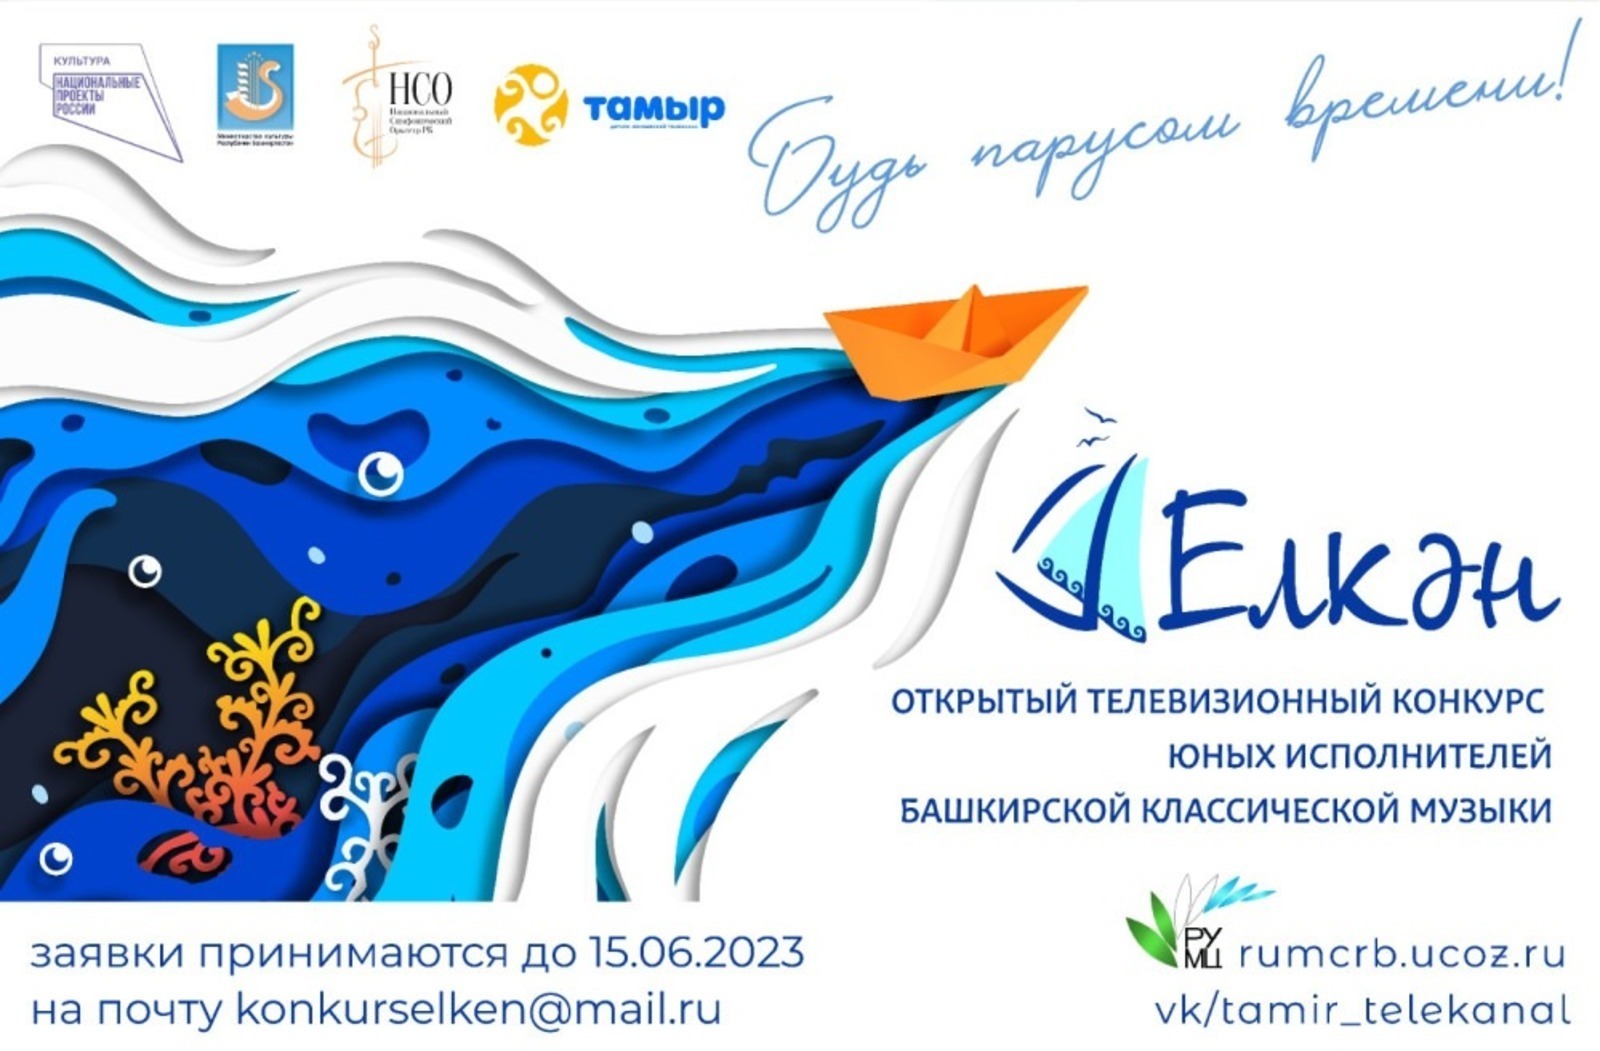 В Уфе открытый телевизионный конкурс «Елкән» объявил о приеме заявок